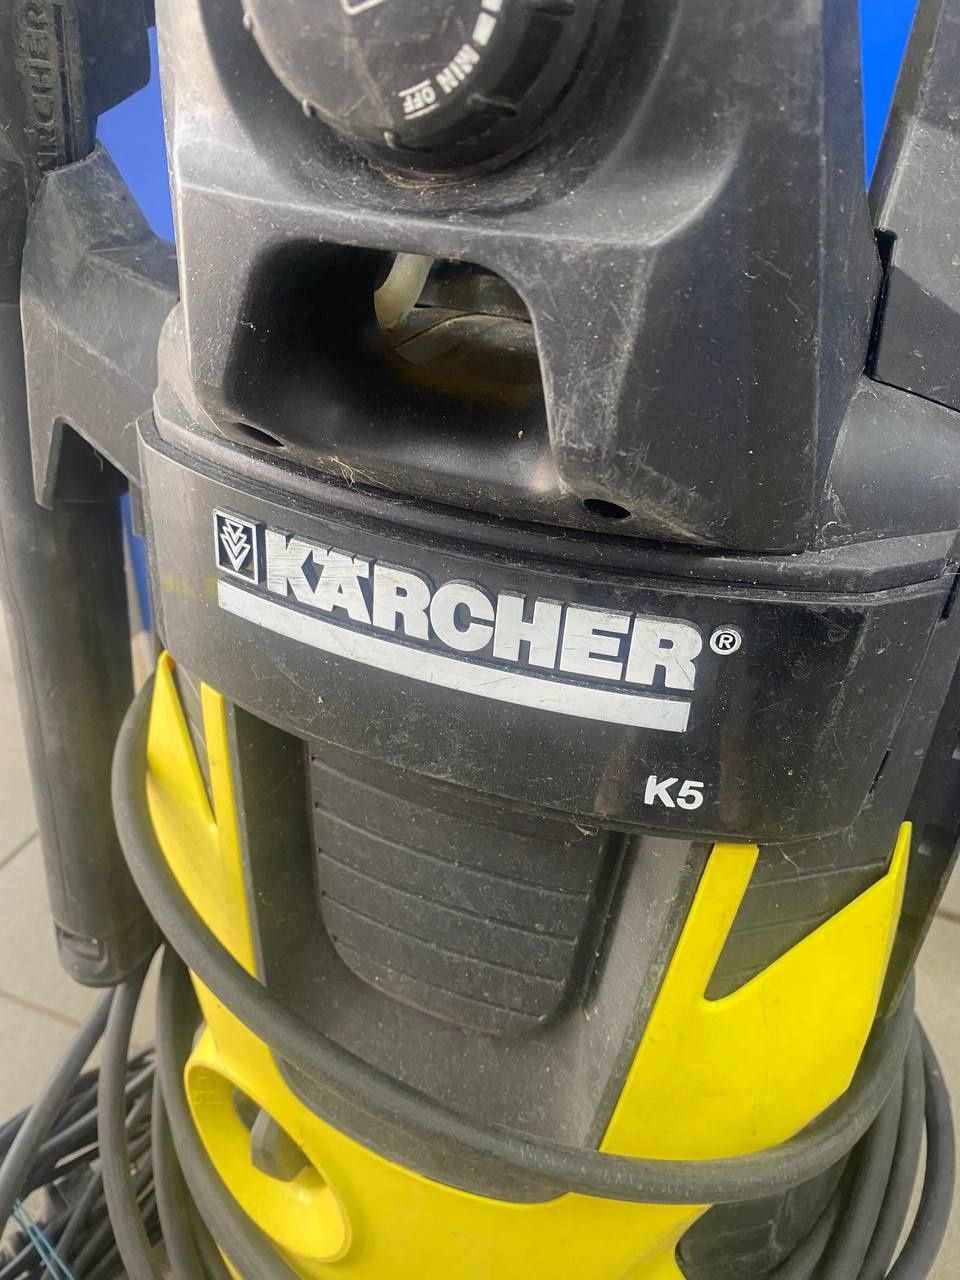 Karcher K5 1.180.633.0.